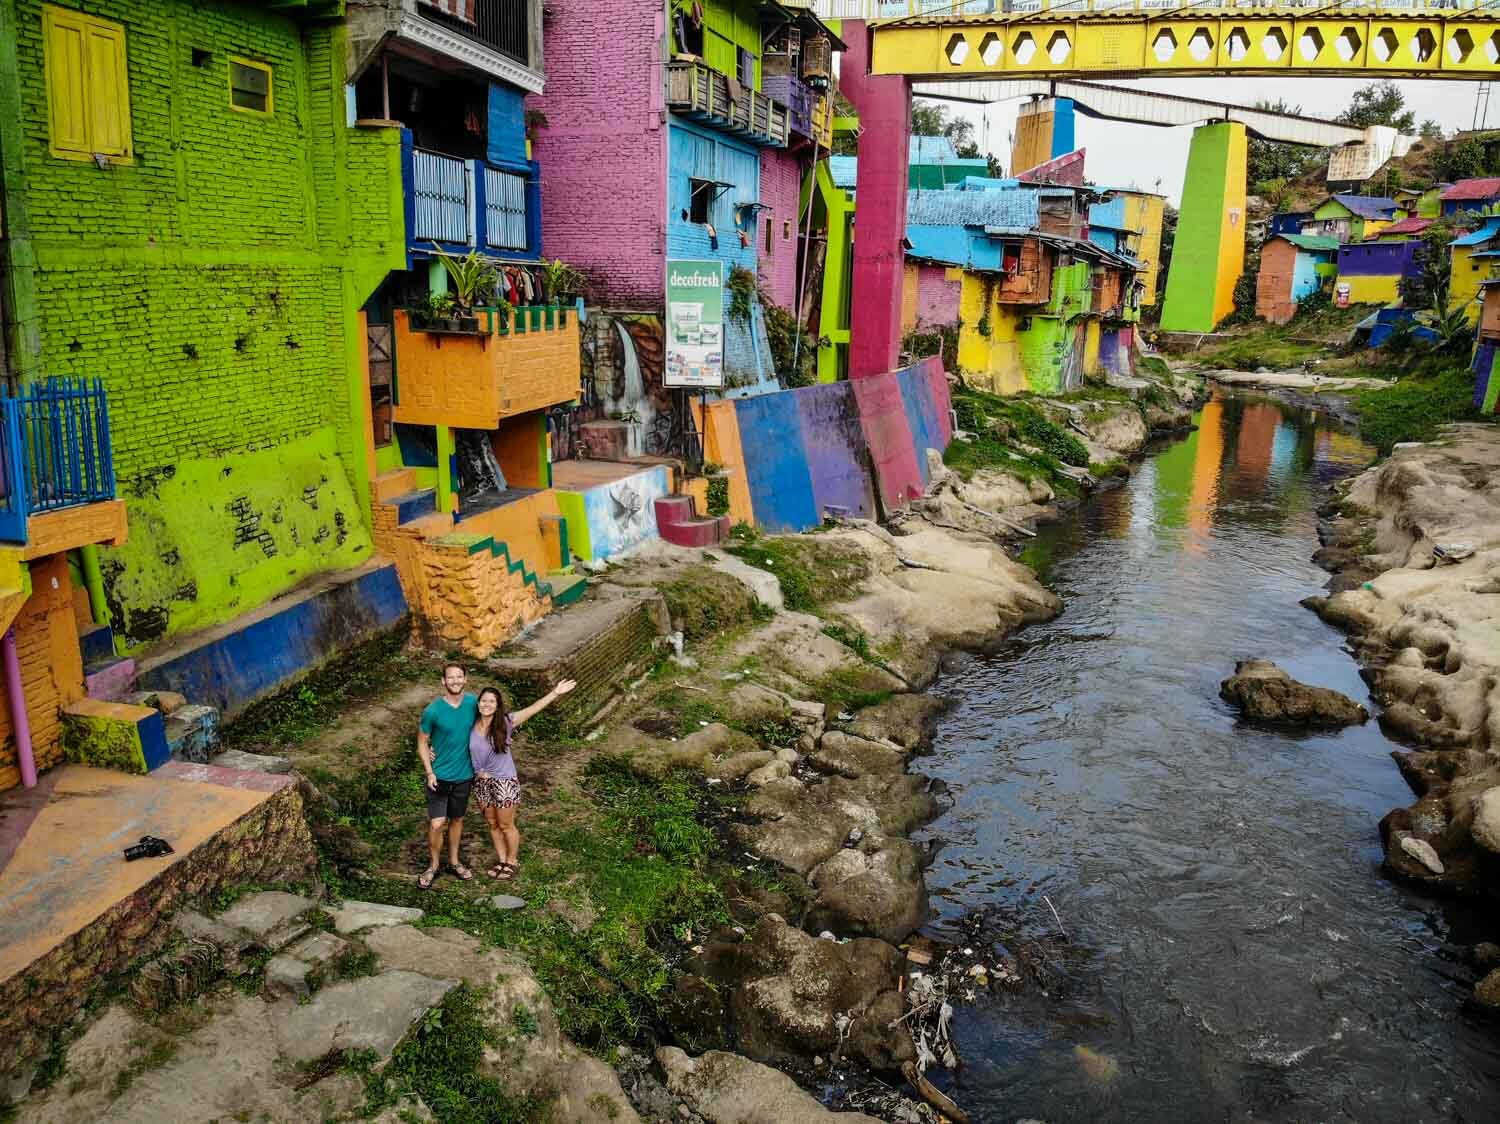 Bantas River Jodipan Kampung Warna Warni Malang Rainbow Village